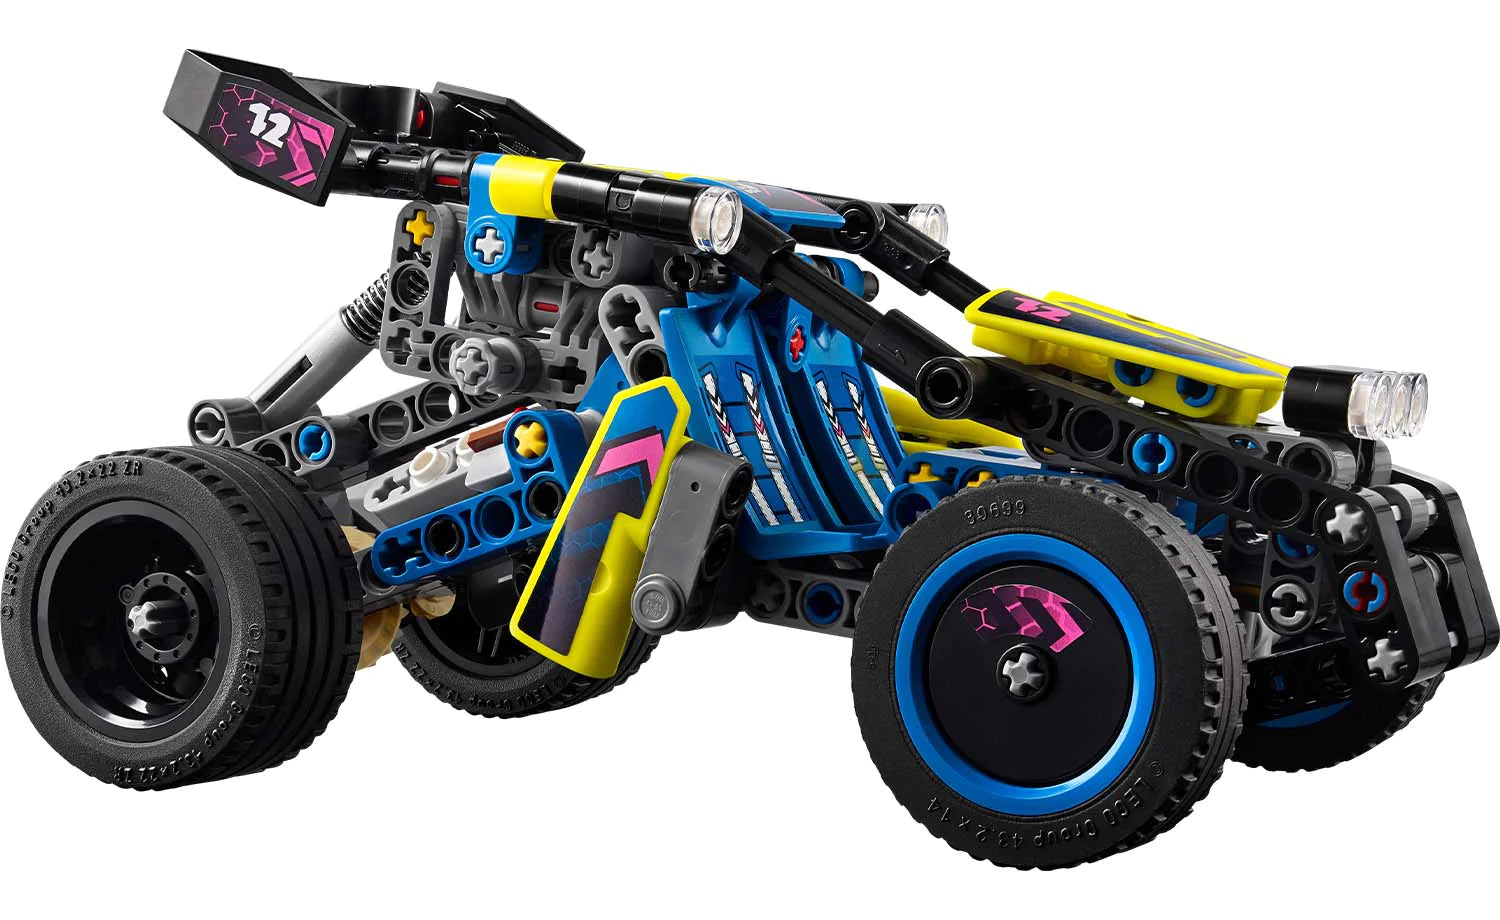 42164 LEGO® Technic Off-Road Race Buggy